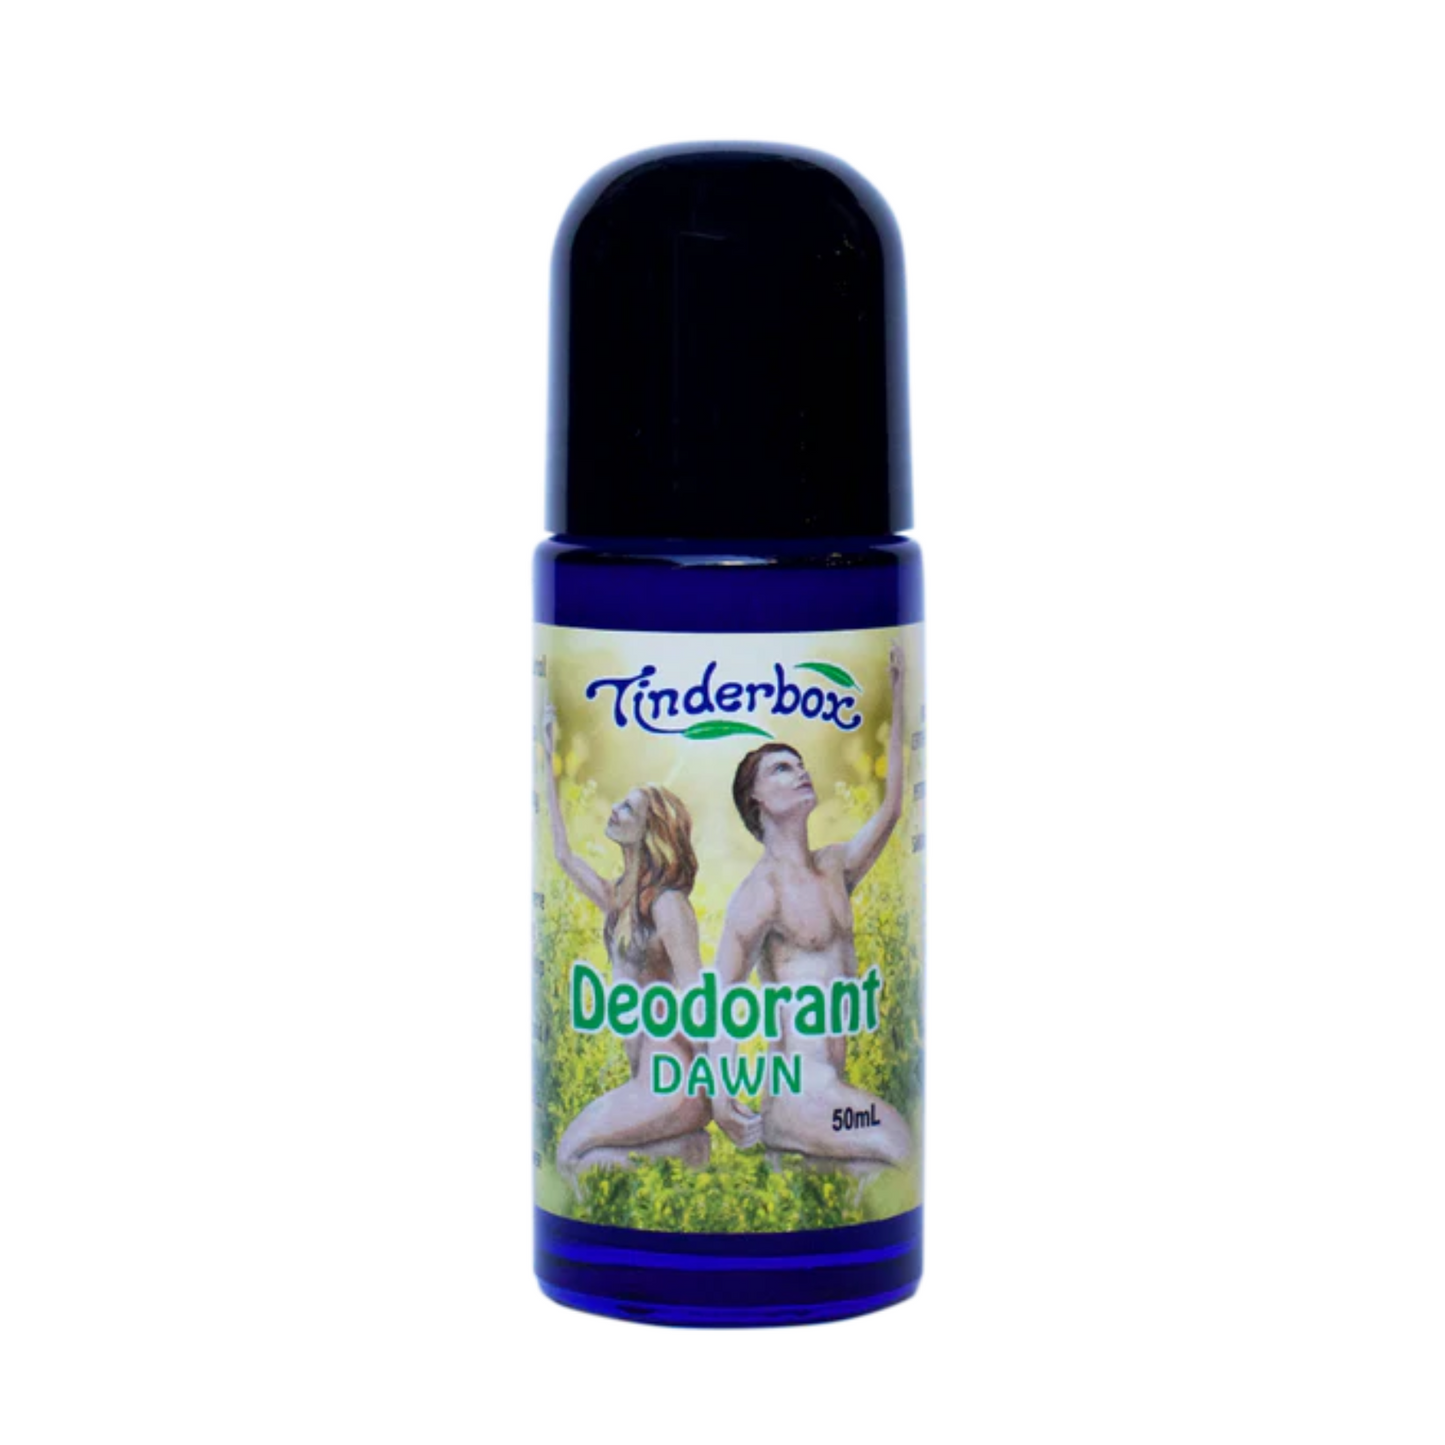 Tinderbox Deodorant 50ml, Dawn Fragrance